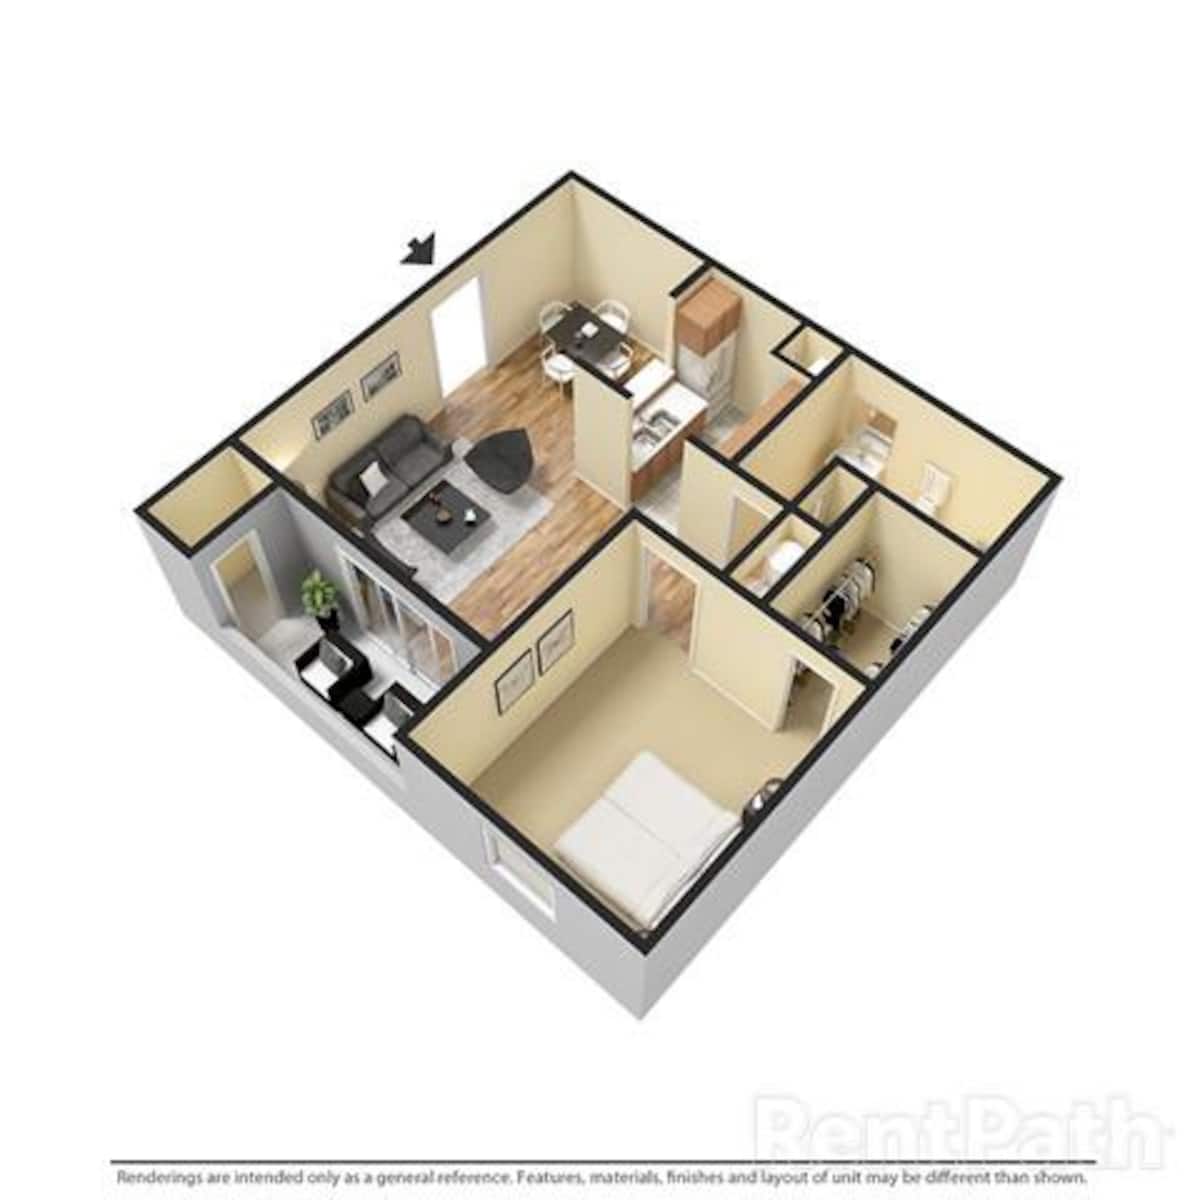 Floorplan diagram for 1 BEDROOM 1 BATH, showing 1 bedroom